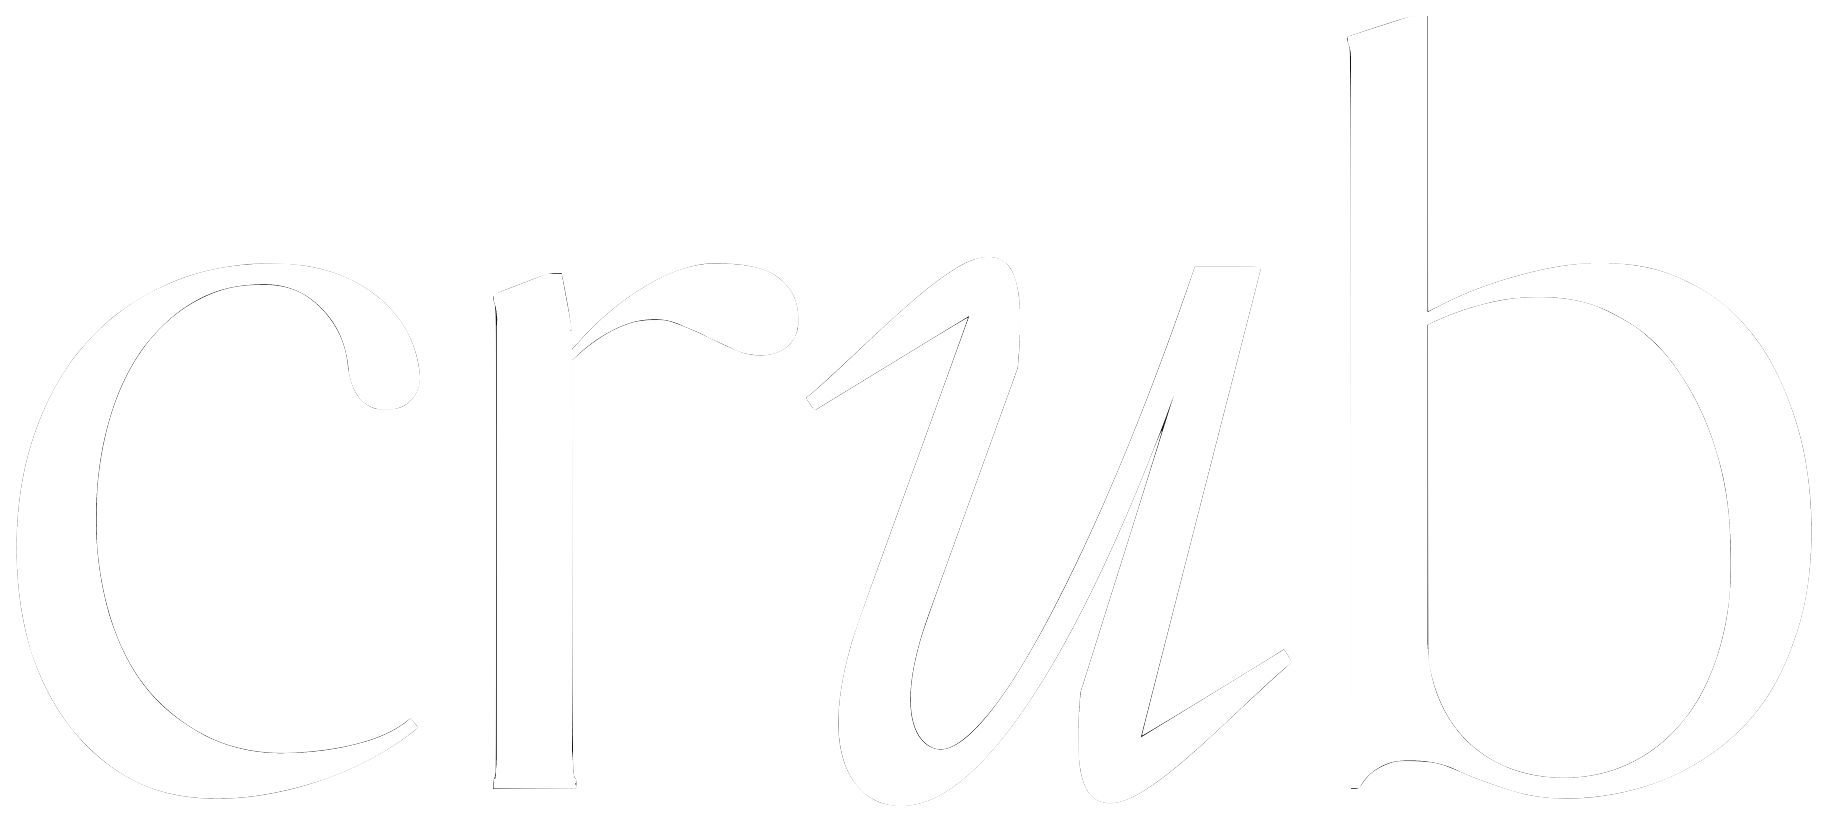 Crub white logo